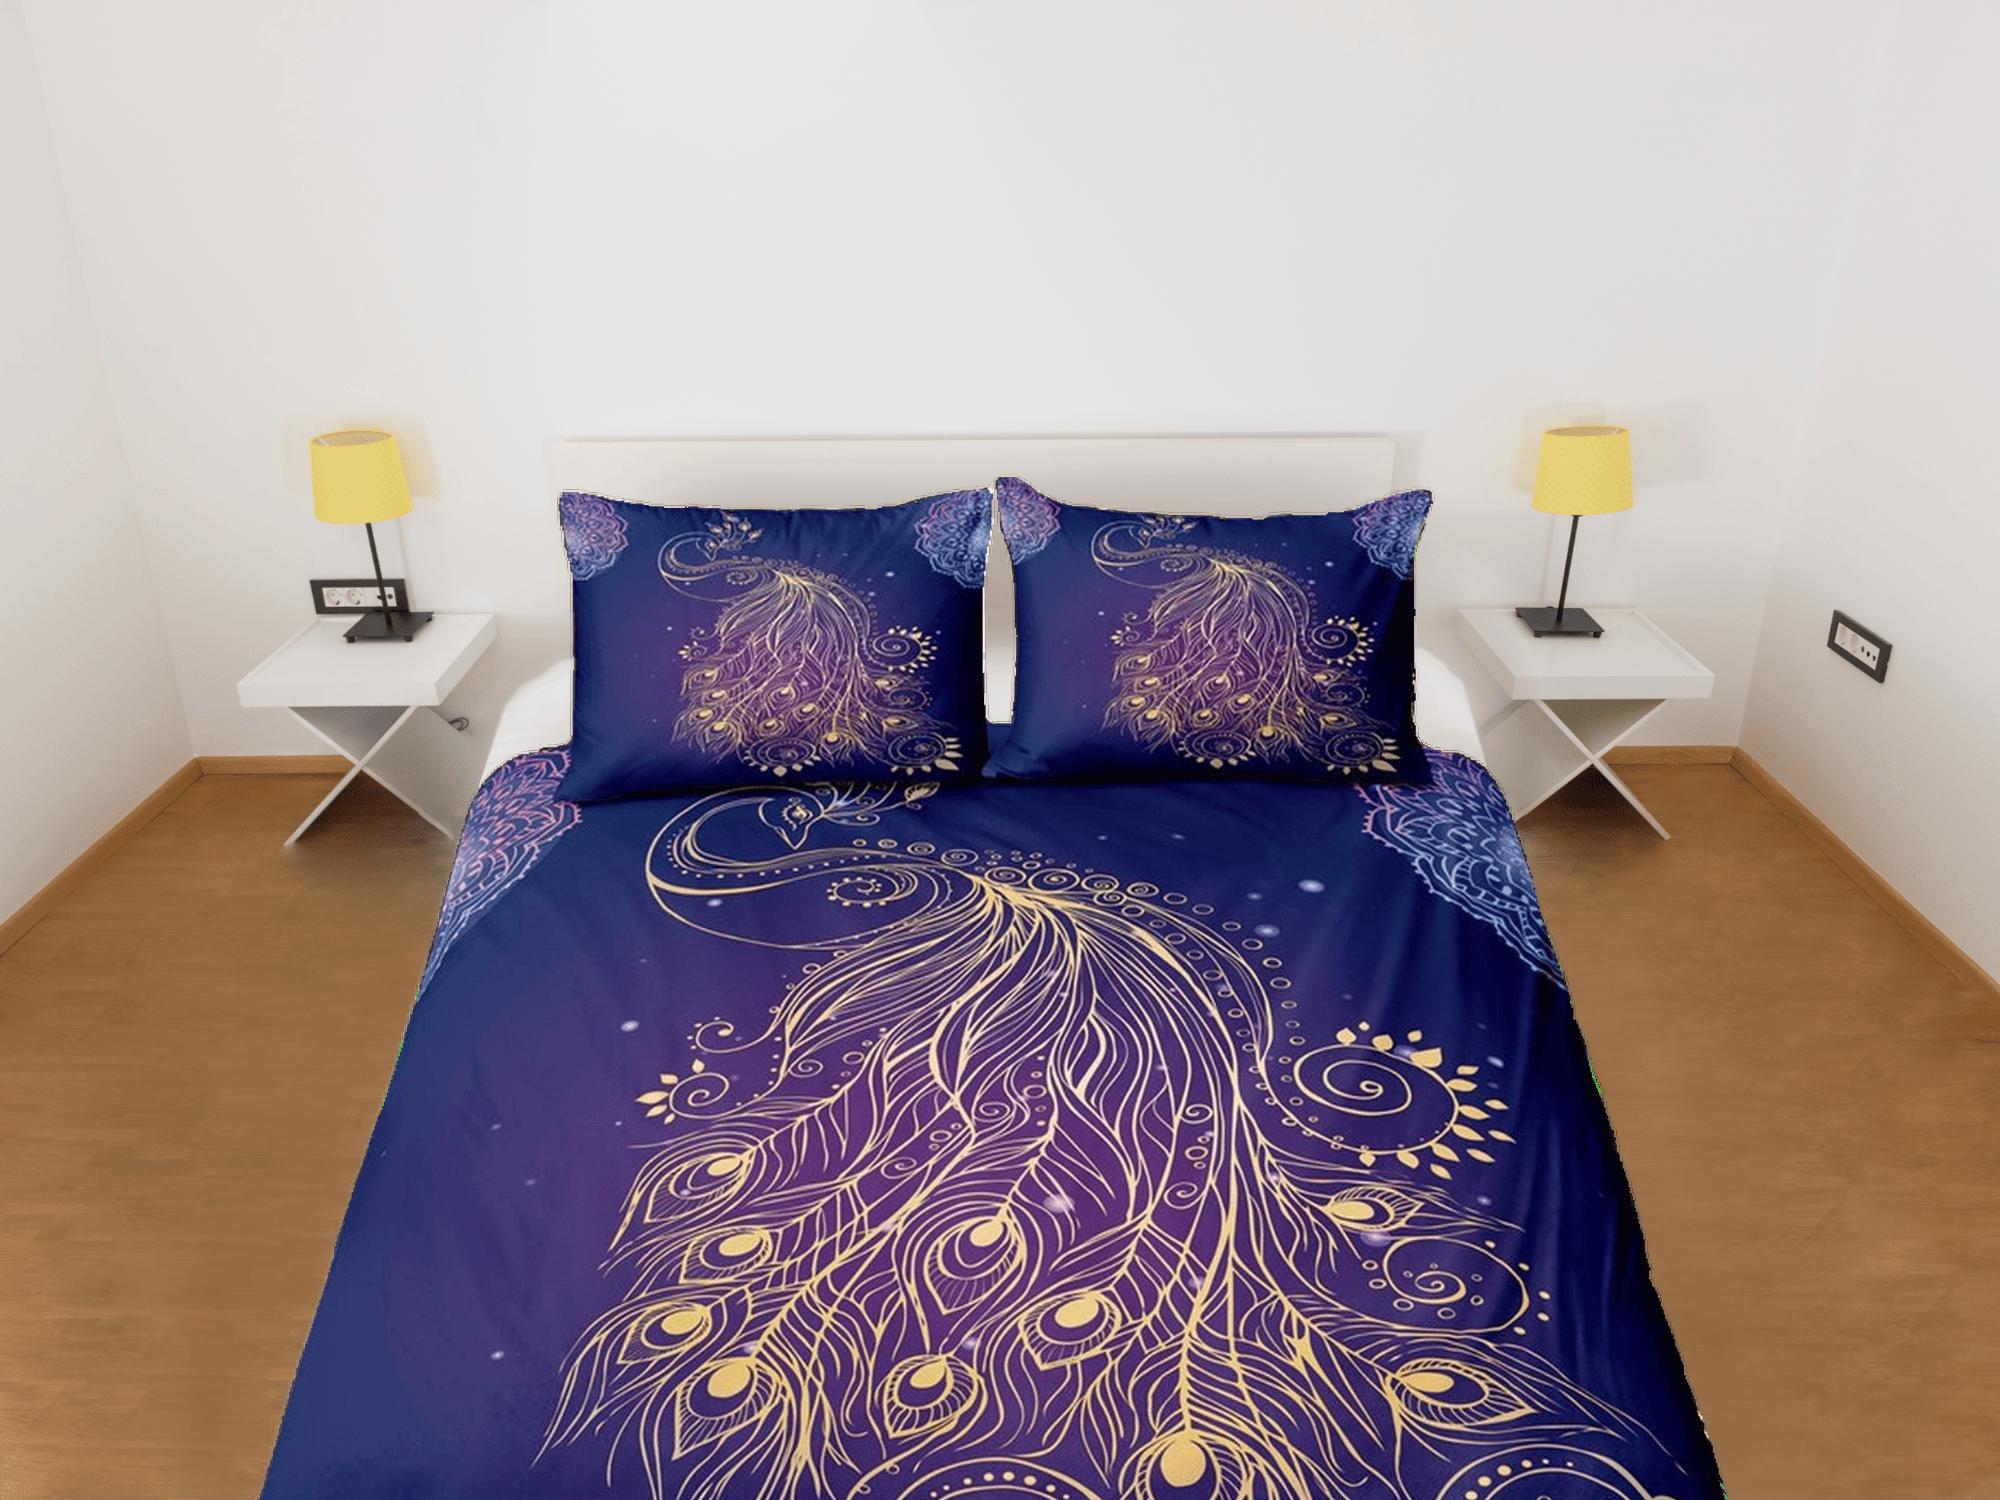 daintyduvet Koamaru peacock decor gold aesthetic bedding set full, luxury duvet cover queen, king, boho duvet, designer bedding, maximalist bedspread